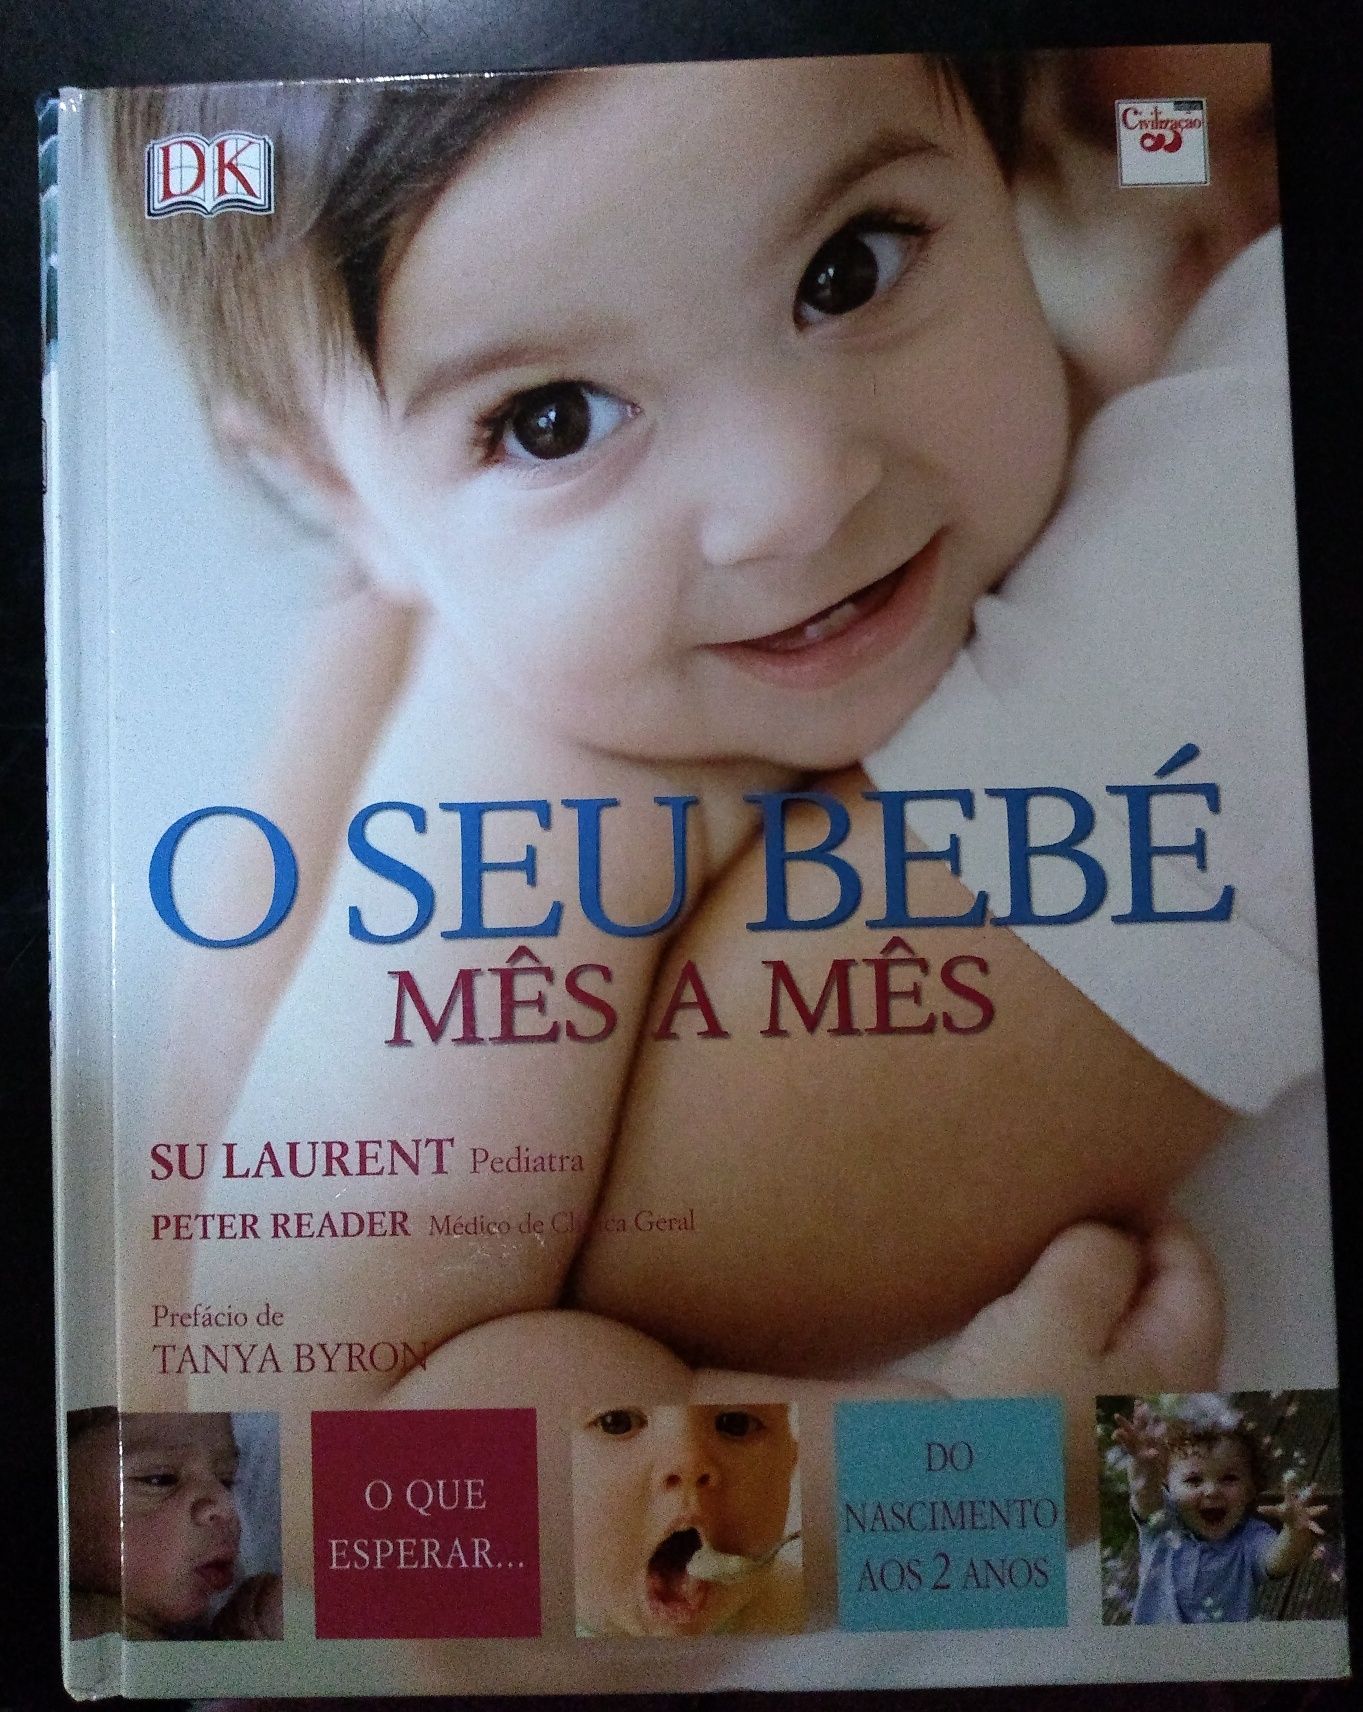 Livro / Manual "O Seu Bebé Mês a Mês"